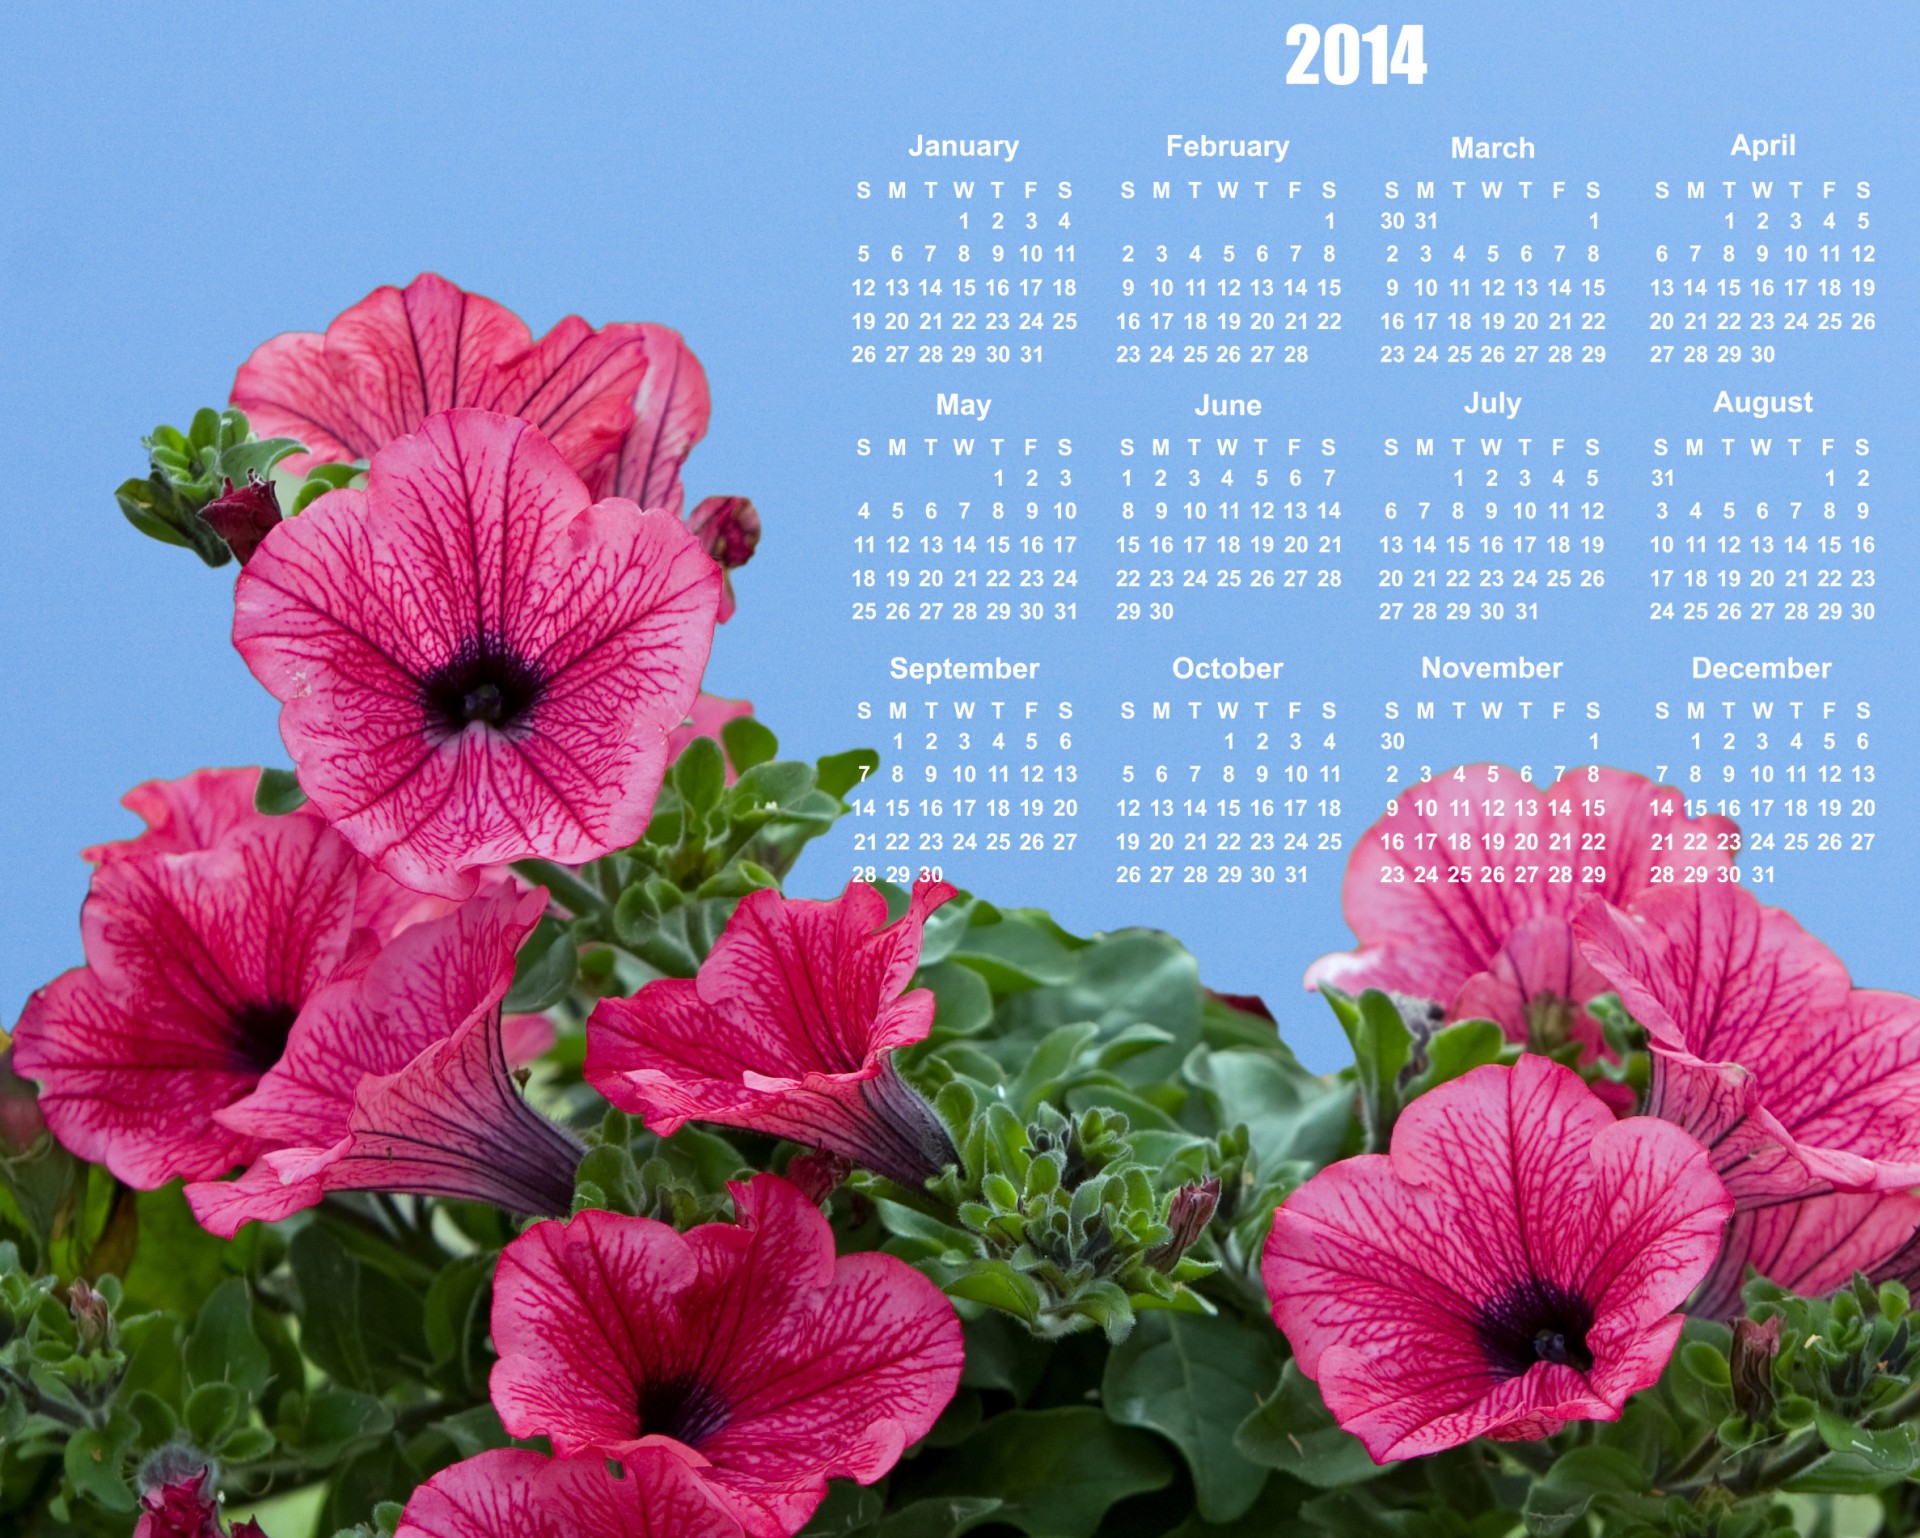 Gėlės,  Kalendorius & Nbsp,  2014,  2014,  Kalendorius,  Rožinis,  Gražus,  Šviesus,  Mėlynas,  Dangus